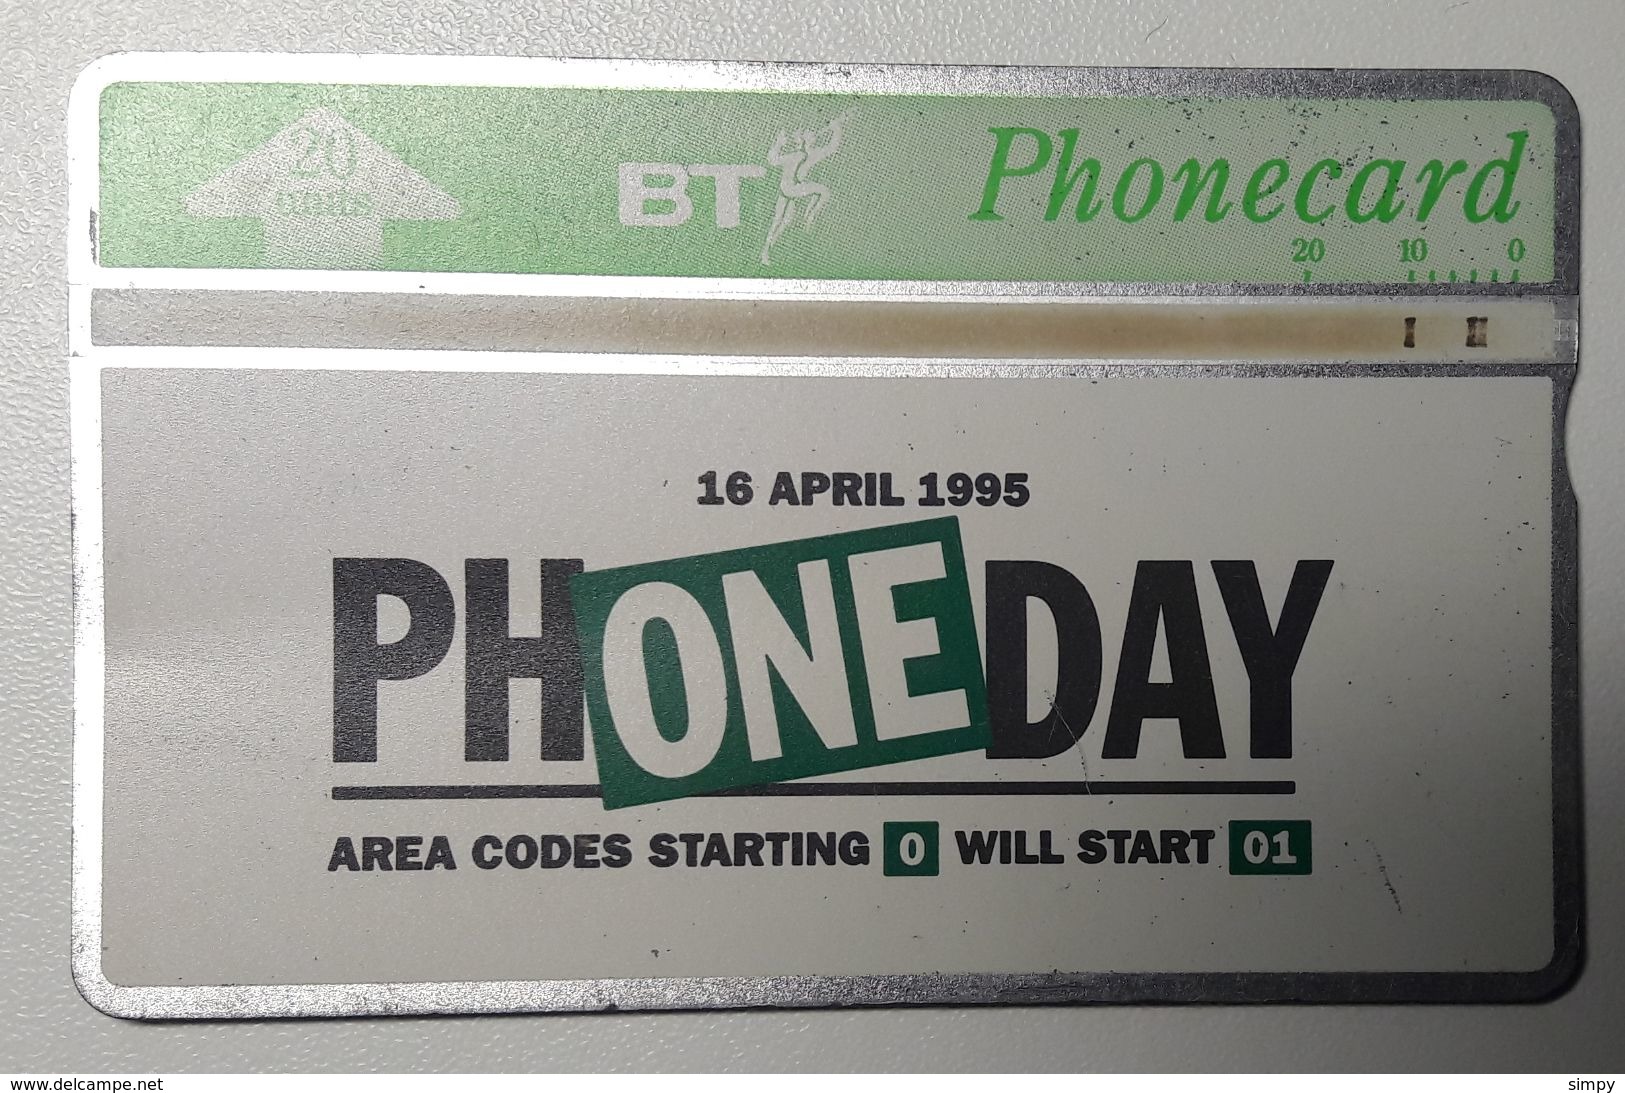 United Kingdom BT Phone Day 16.4.1995  Magnet Phone Card 20 Units - BT Kaarten Voor Hele Wereld (Vooraf Betaald)